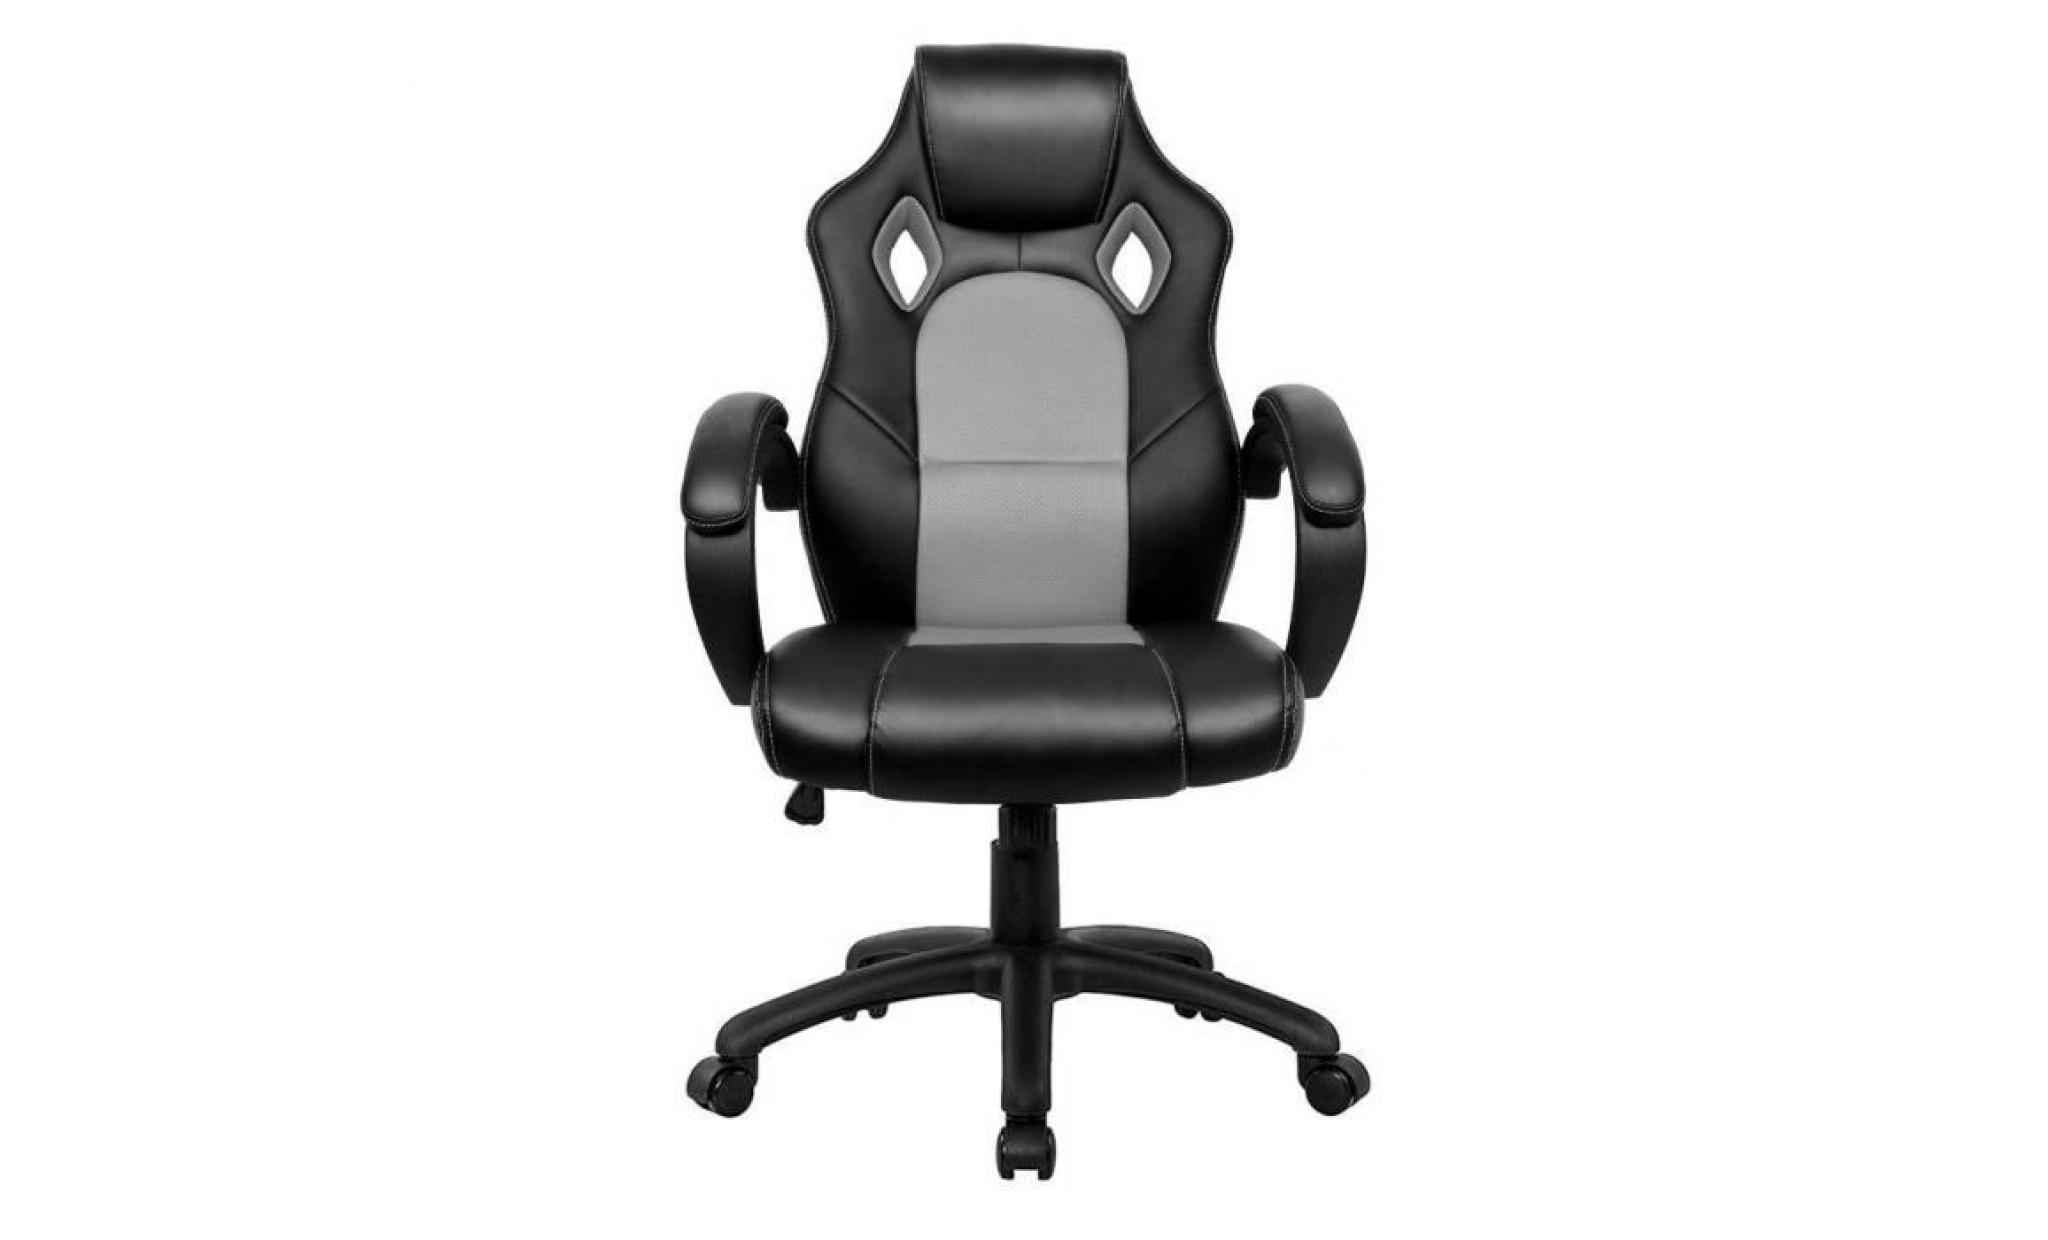 chaise de bureau fauteuil de bureau   moderne confortable ergonomique en similicuir pu   hauteur réglable   bleu   intimate wm heart pas cher